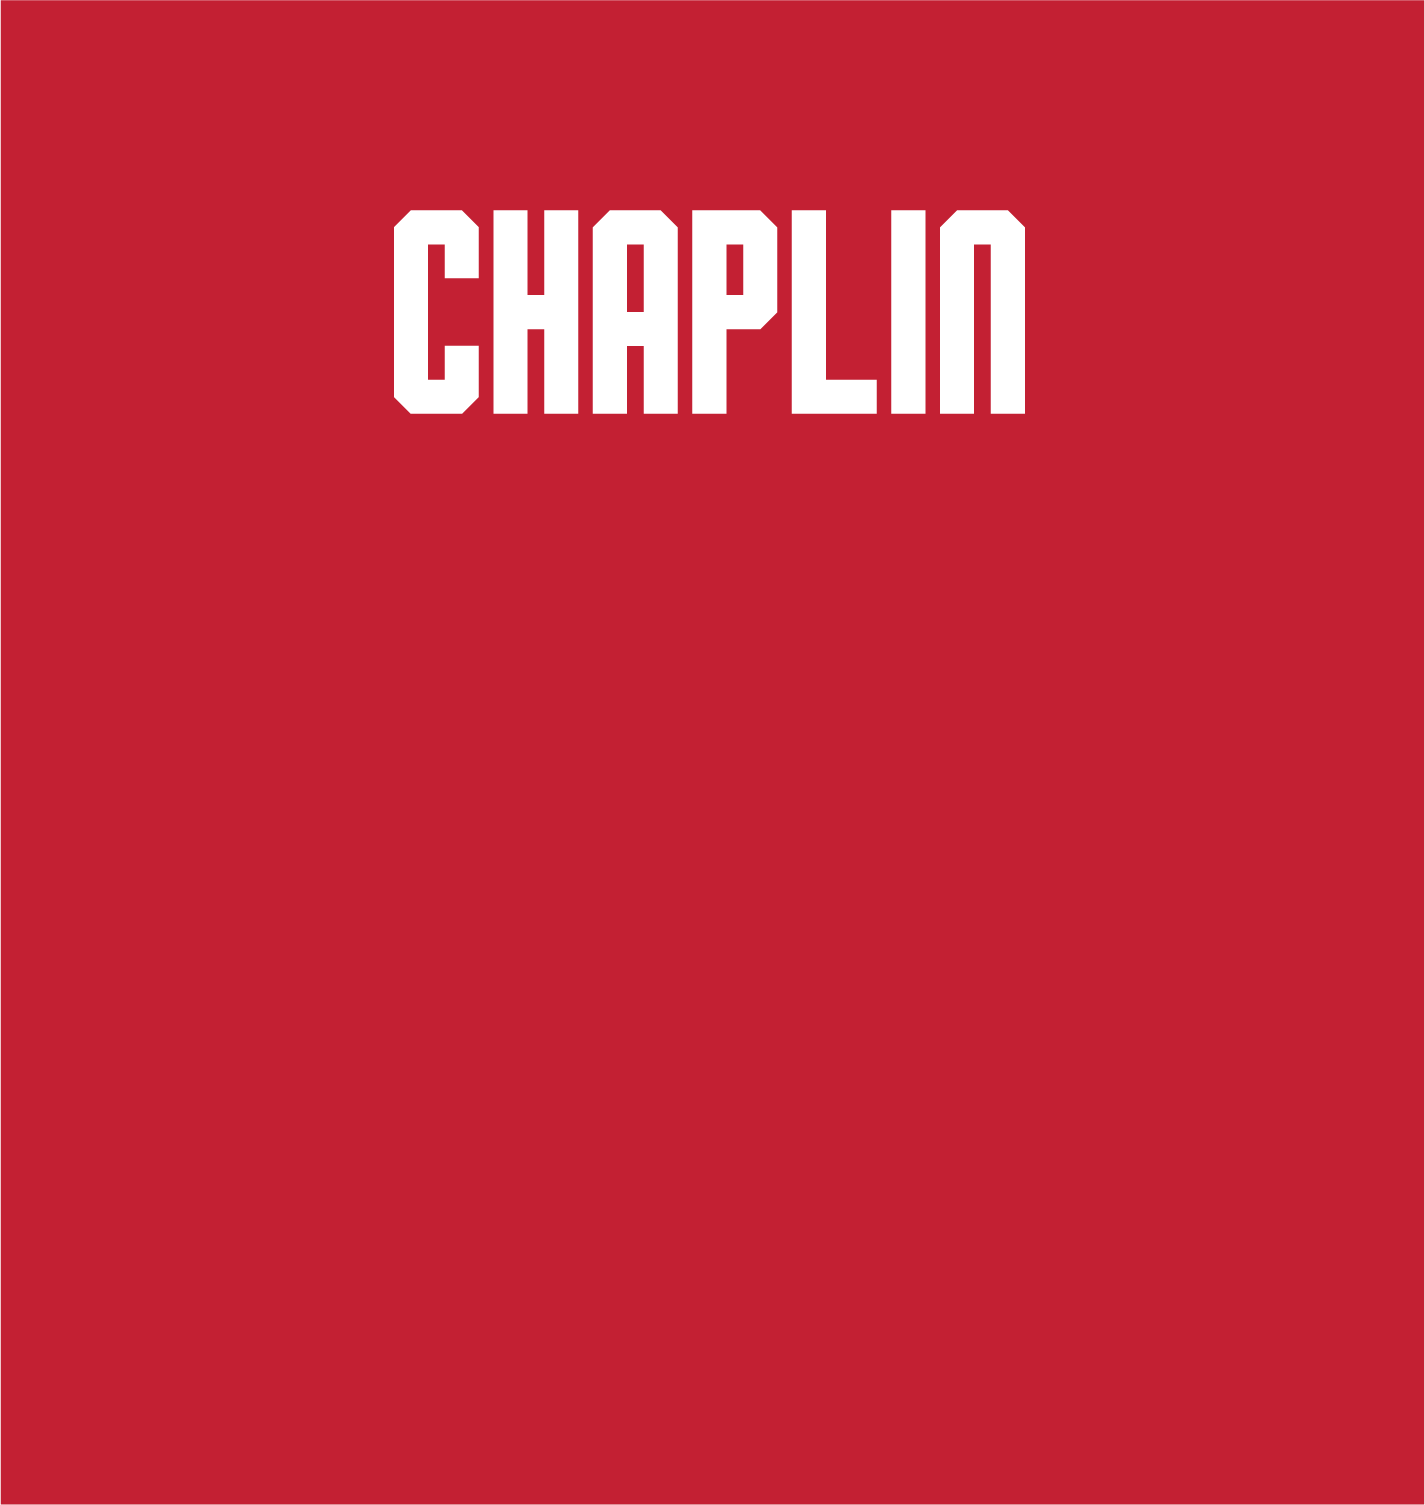 Clayton Chaplin